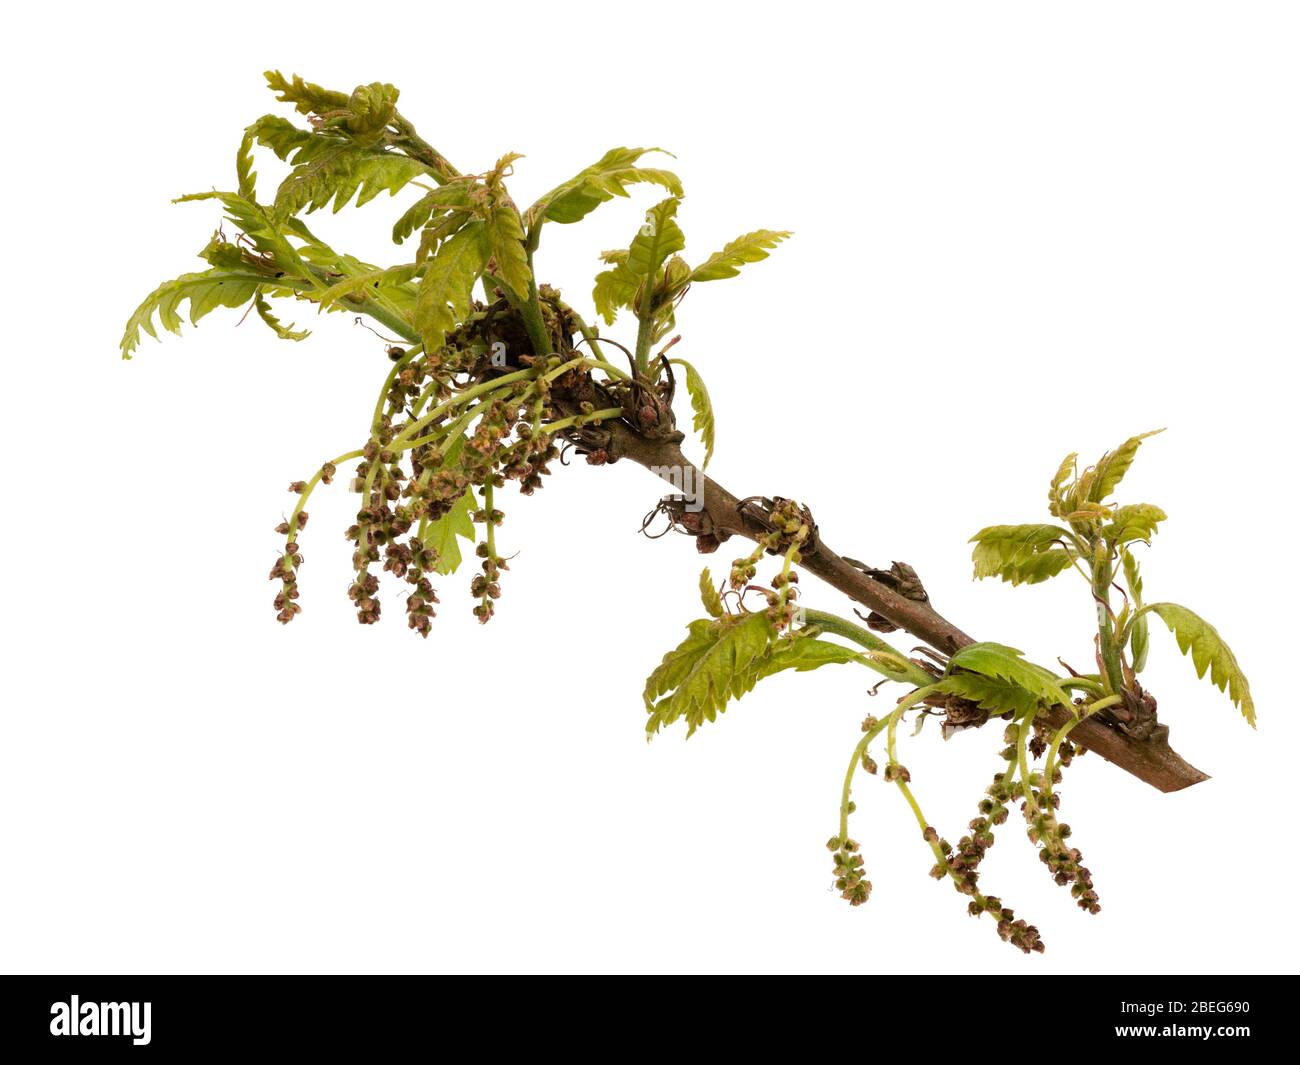 Fogliame emergente e fiori pollinati a vento della quercia sessile nativa del Regno Unito, Quercus petraea, su sfondo bianco Foto Stock